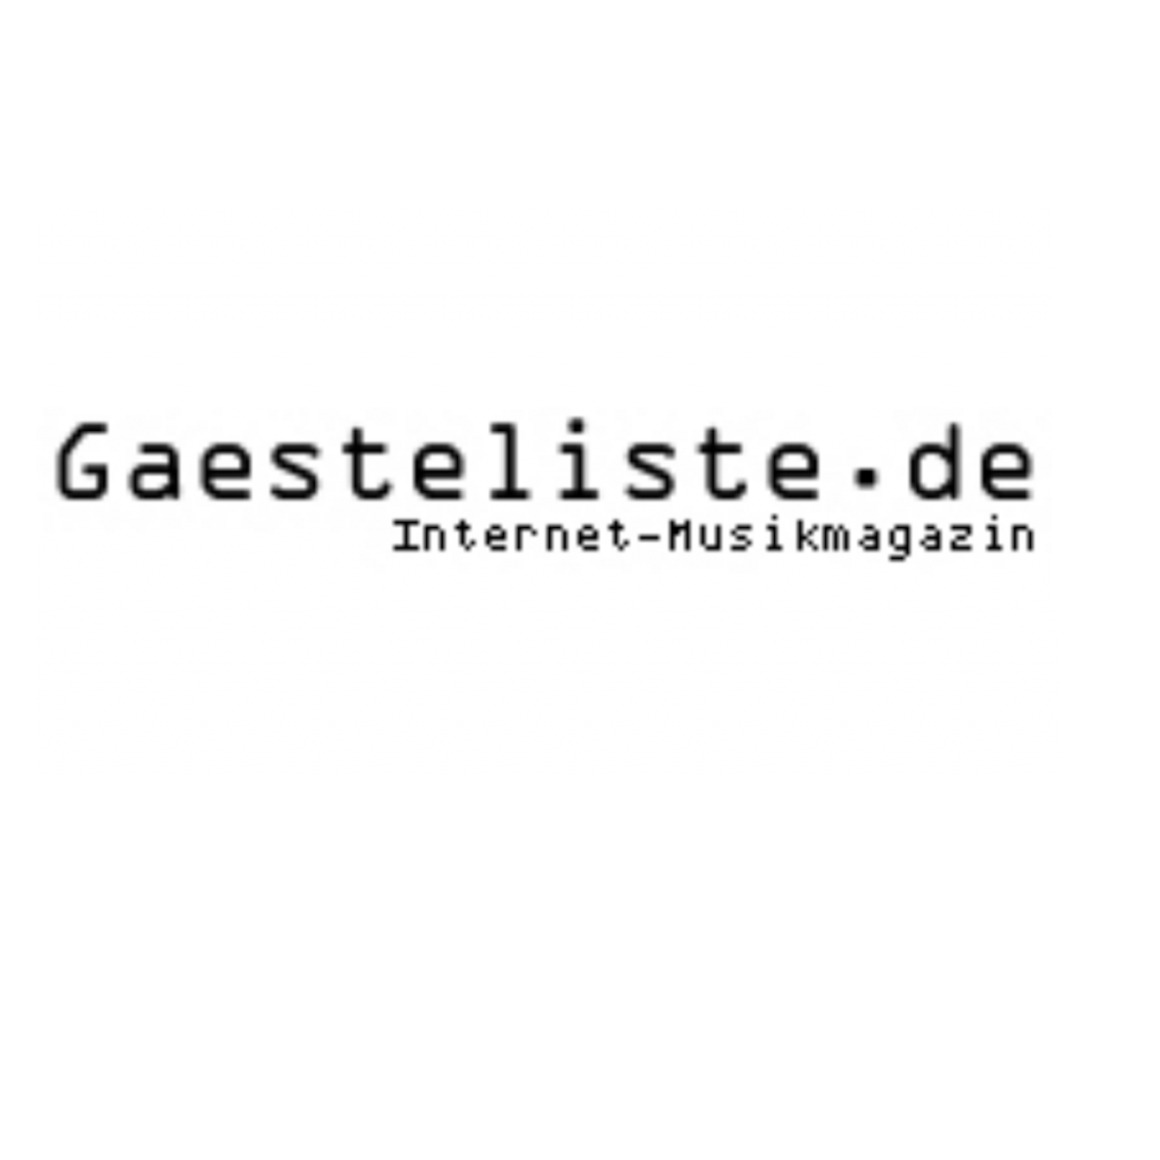 gaesteliste_logo_square